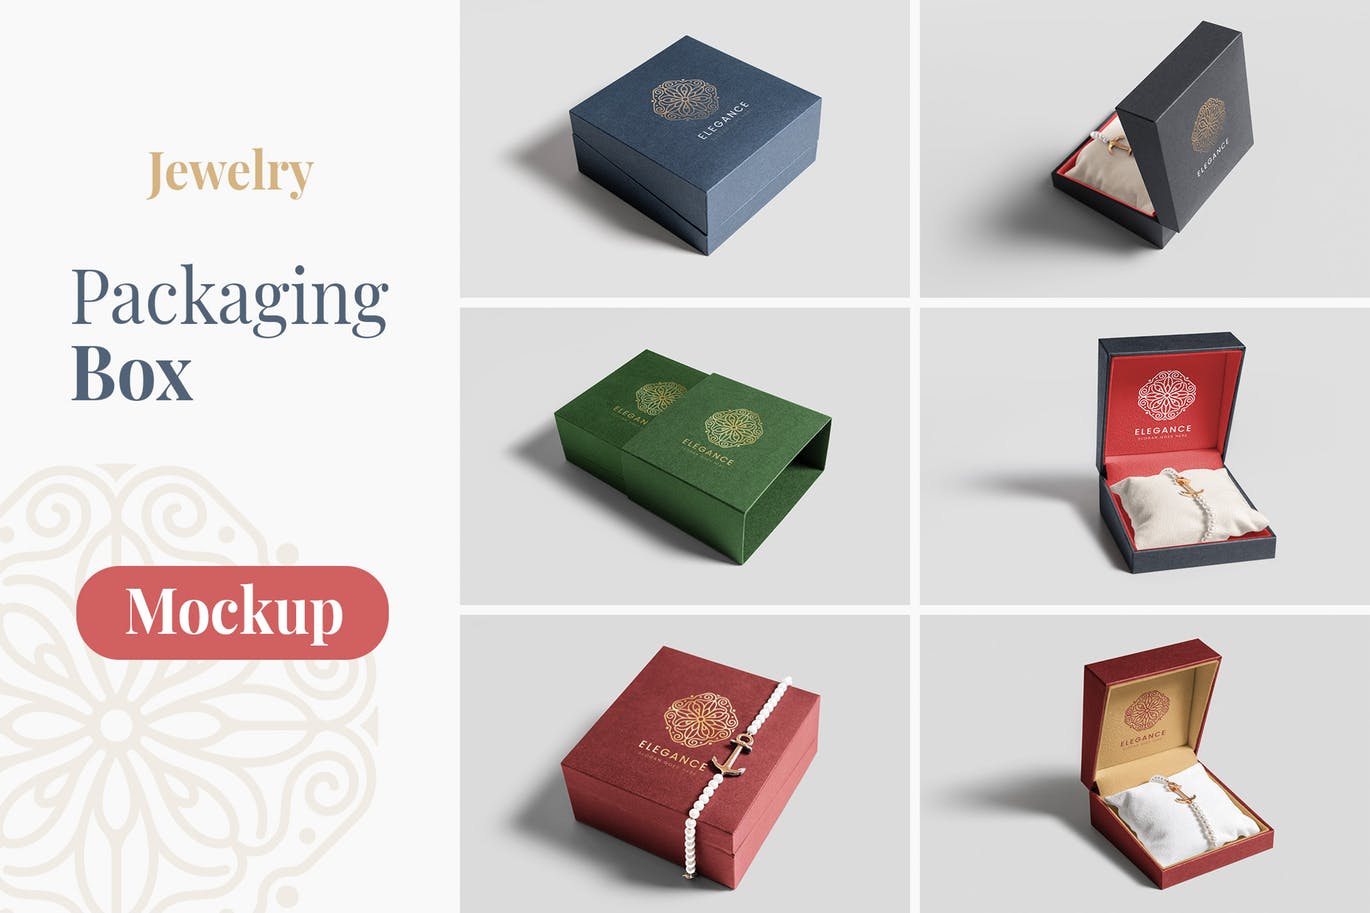 珠宝包装盒设计图大洋岛精选模板 Jewelry Packaging Box Mockups插图